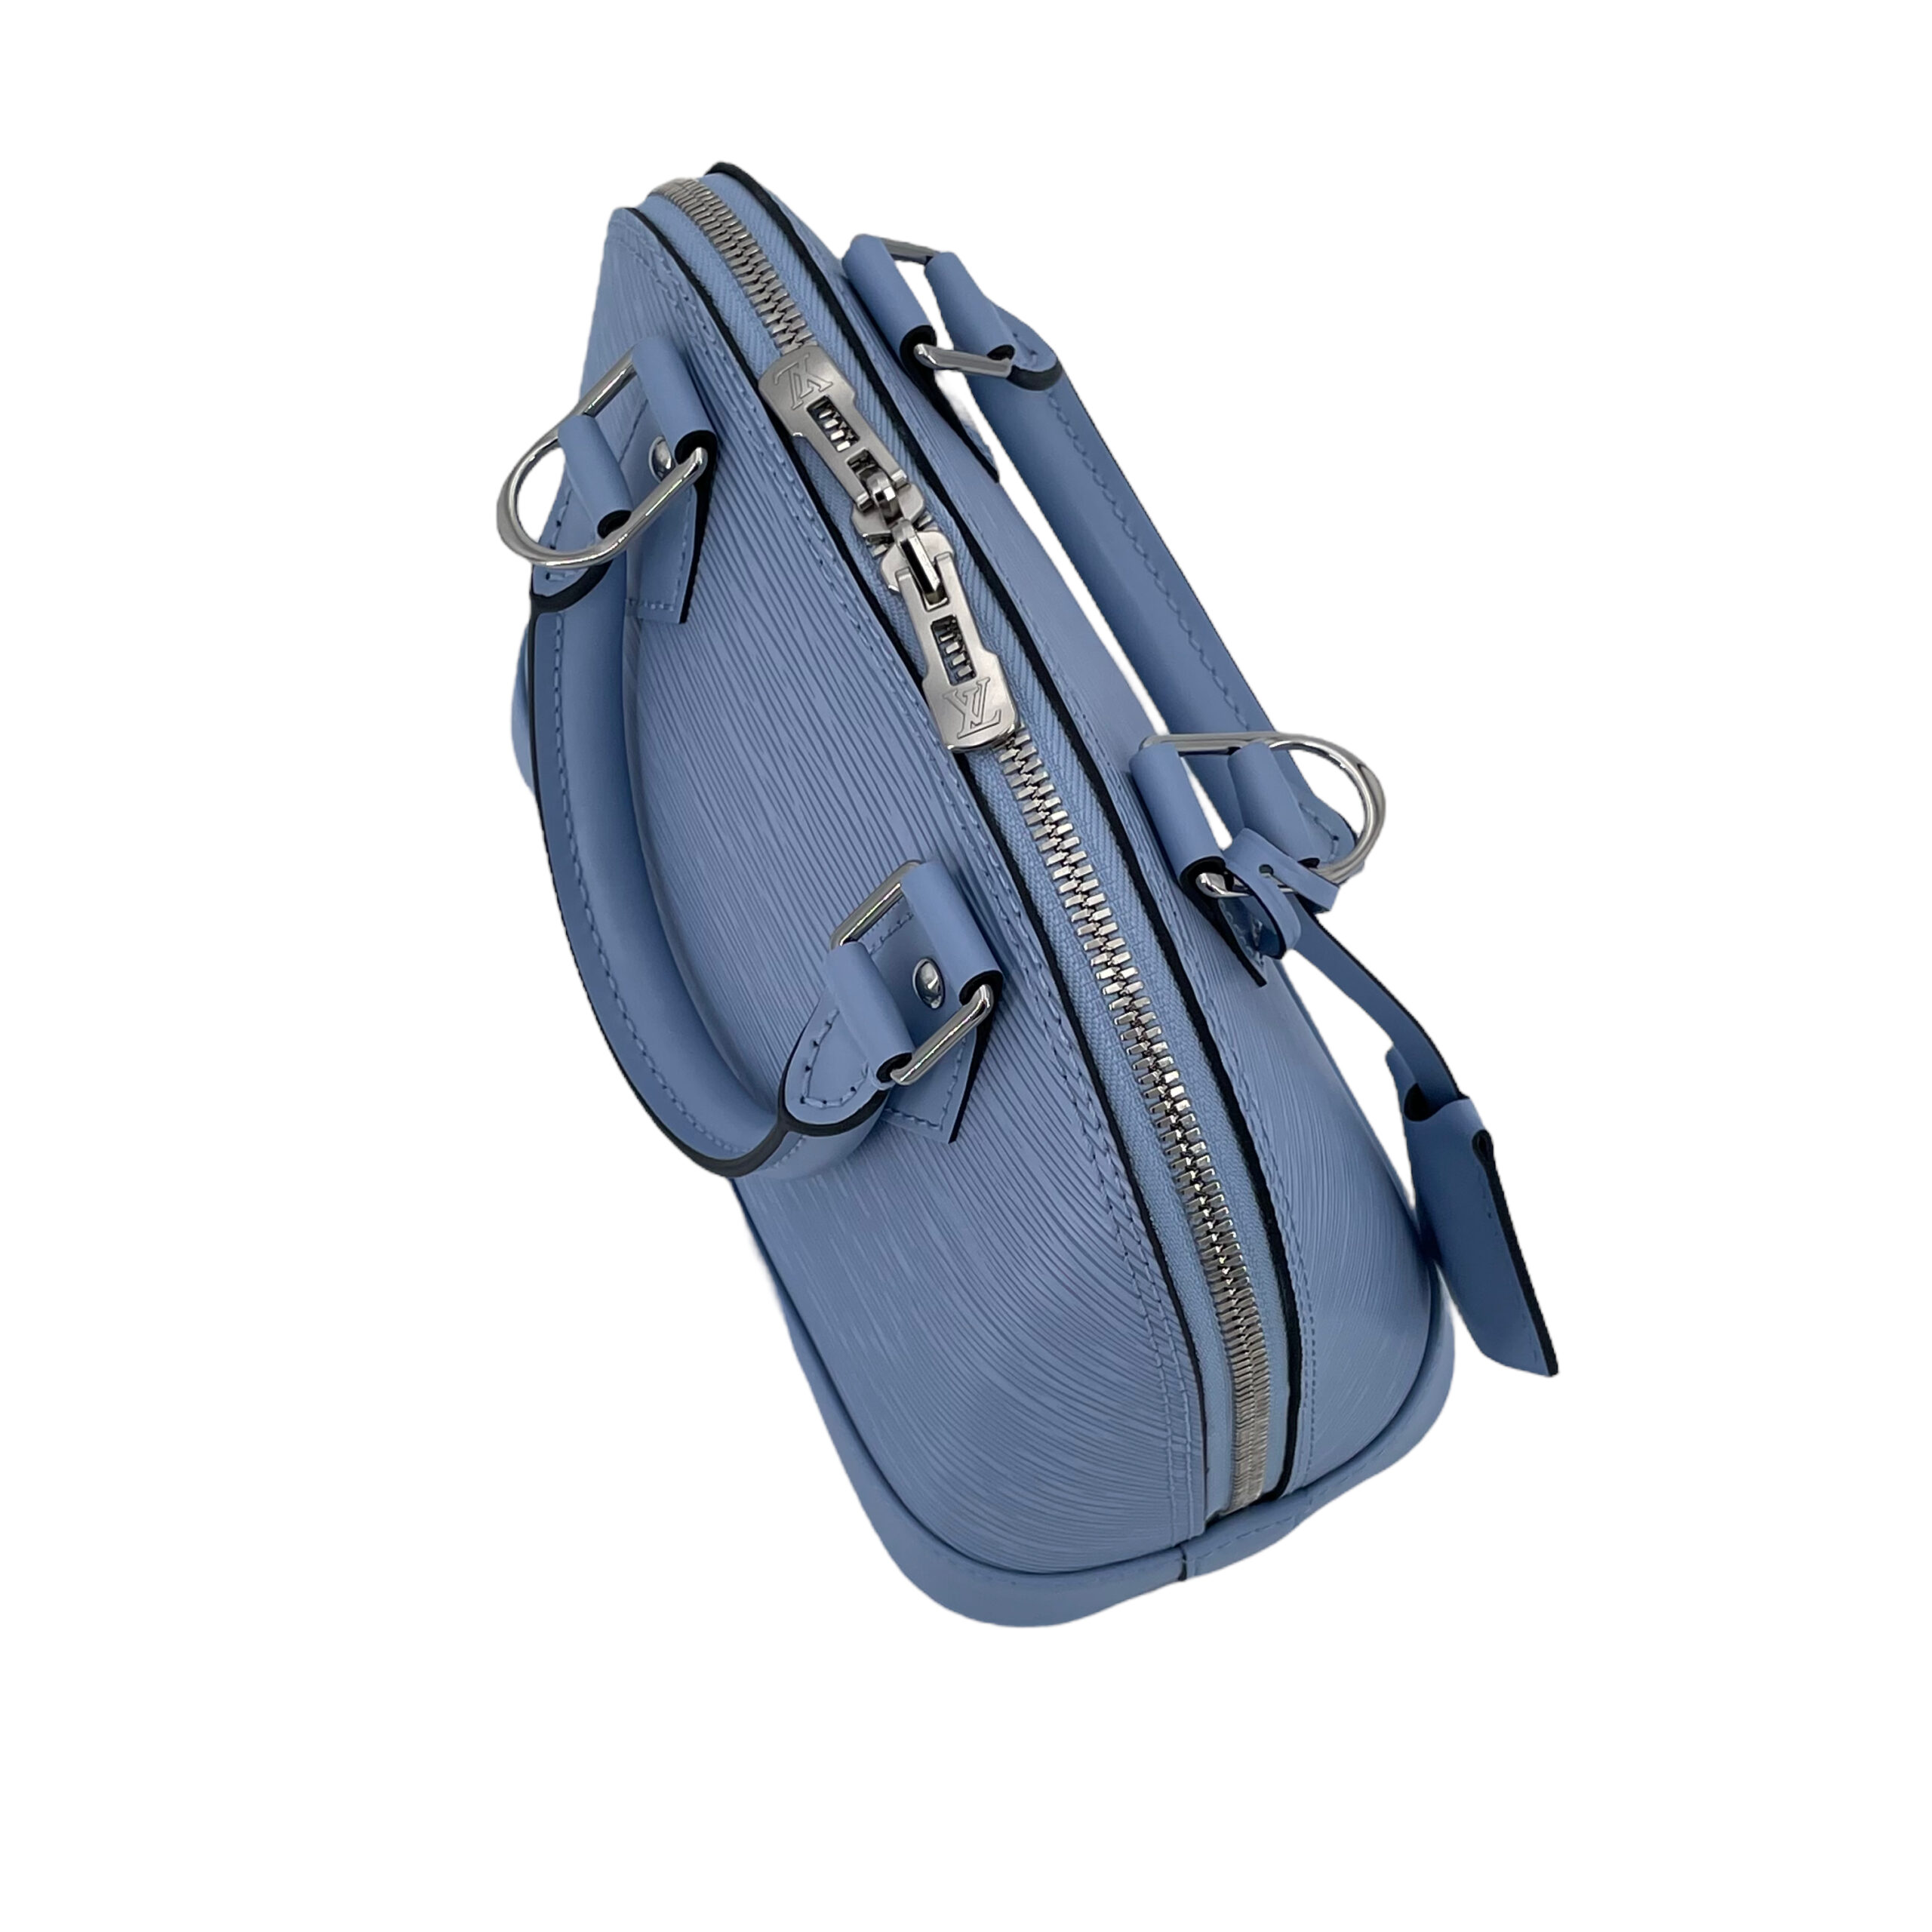 Louis Vuitton Alma BB Epi Bleu Nuage – The Luxury Exchange PDX